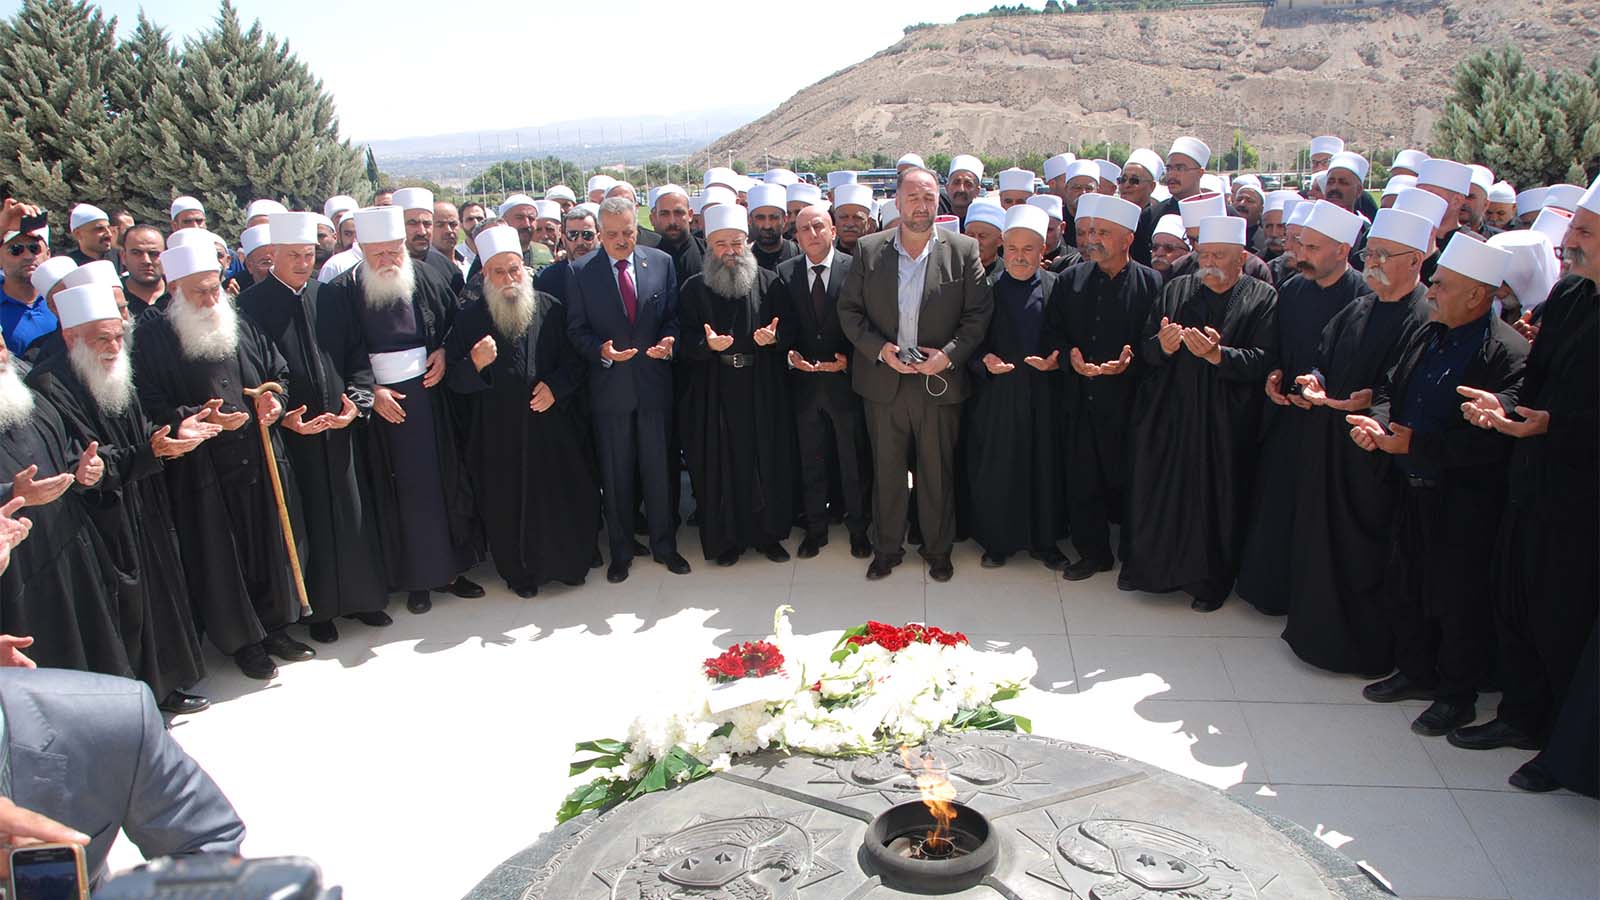 אנשי דת דרוזים מישראל בכנס בסוריה באנדרטת החייל האלמוני דמשק, ספטמבר 2018 (קרדיט: ועדת הקשר)